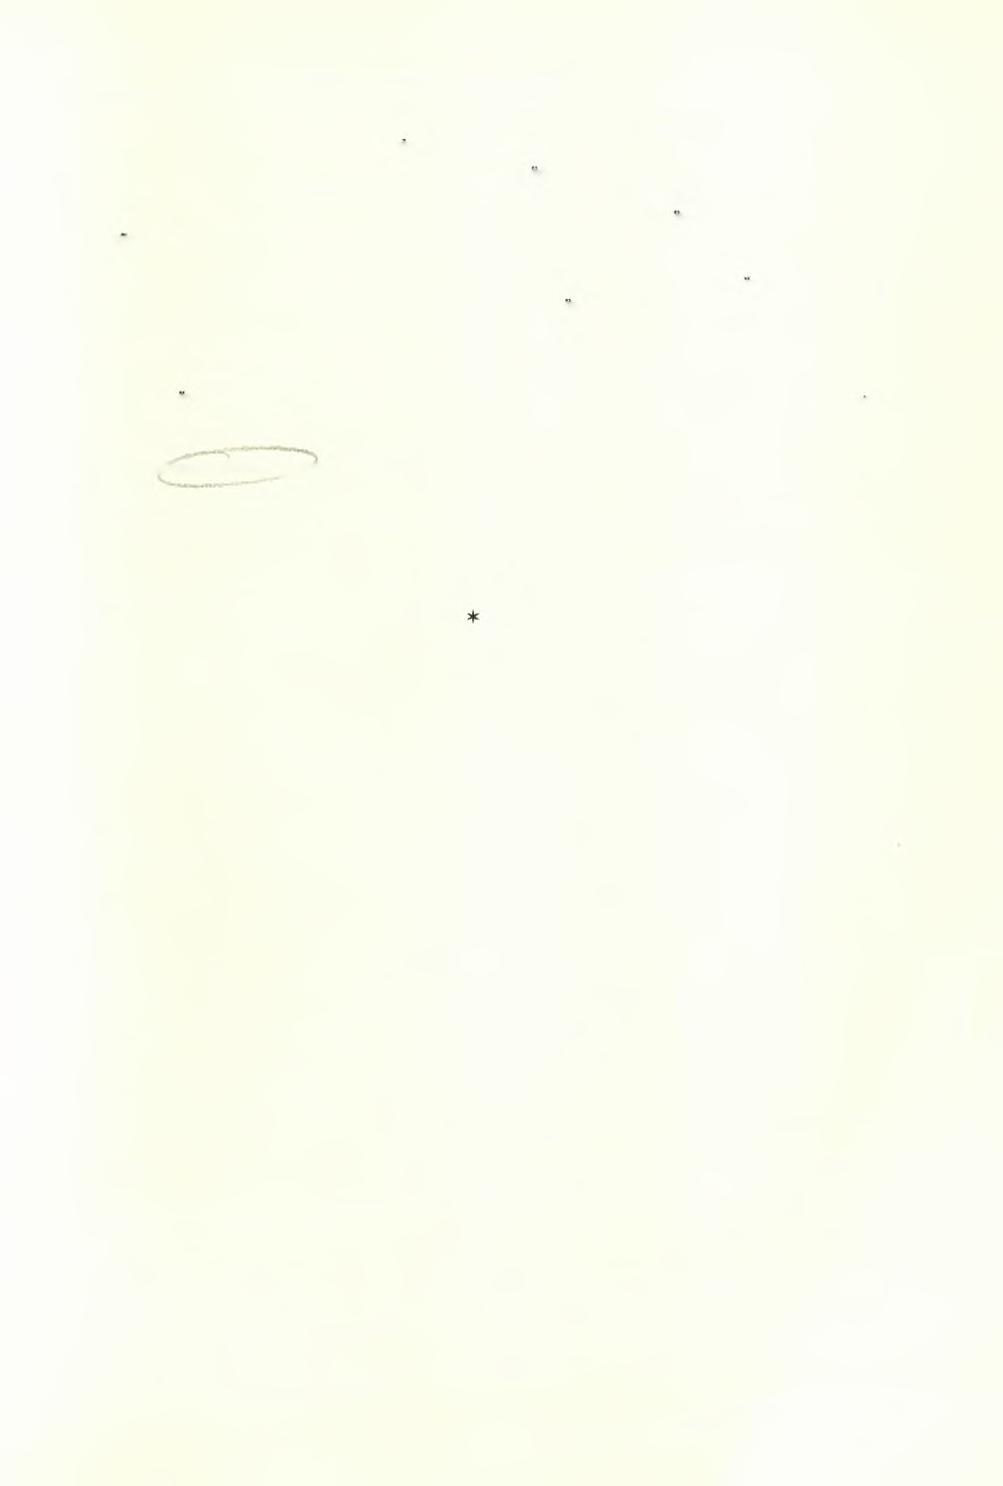 ΘΡΑΚΗ 389 Παράστασις: δύο μορφαί, ή μία άνδρική ( δεξιά ) βψ. 0,26 μ., ή έτέρα δέ γυναικεία (αριστερά ) ΰψ. 0,25 μ., μέ έλαχίστην πλαστικότητα άποδιδόμεναι άμφότεραι.